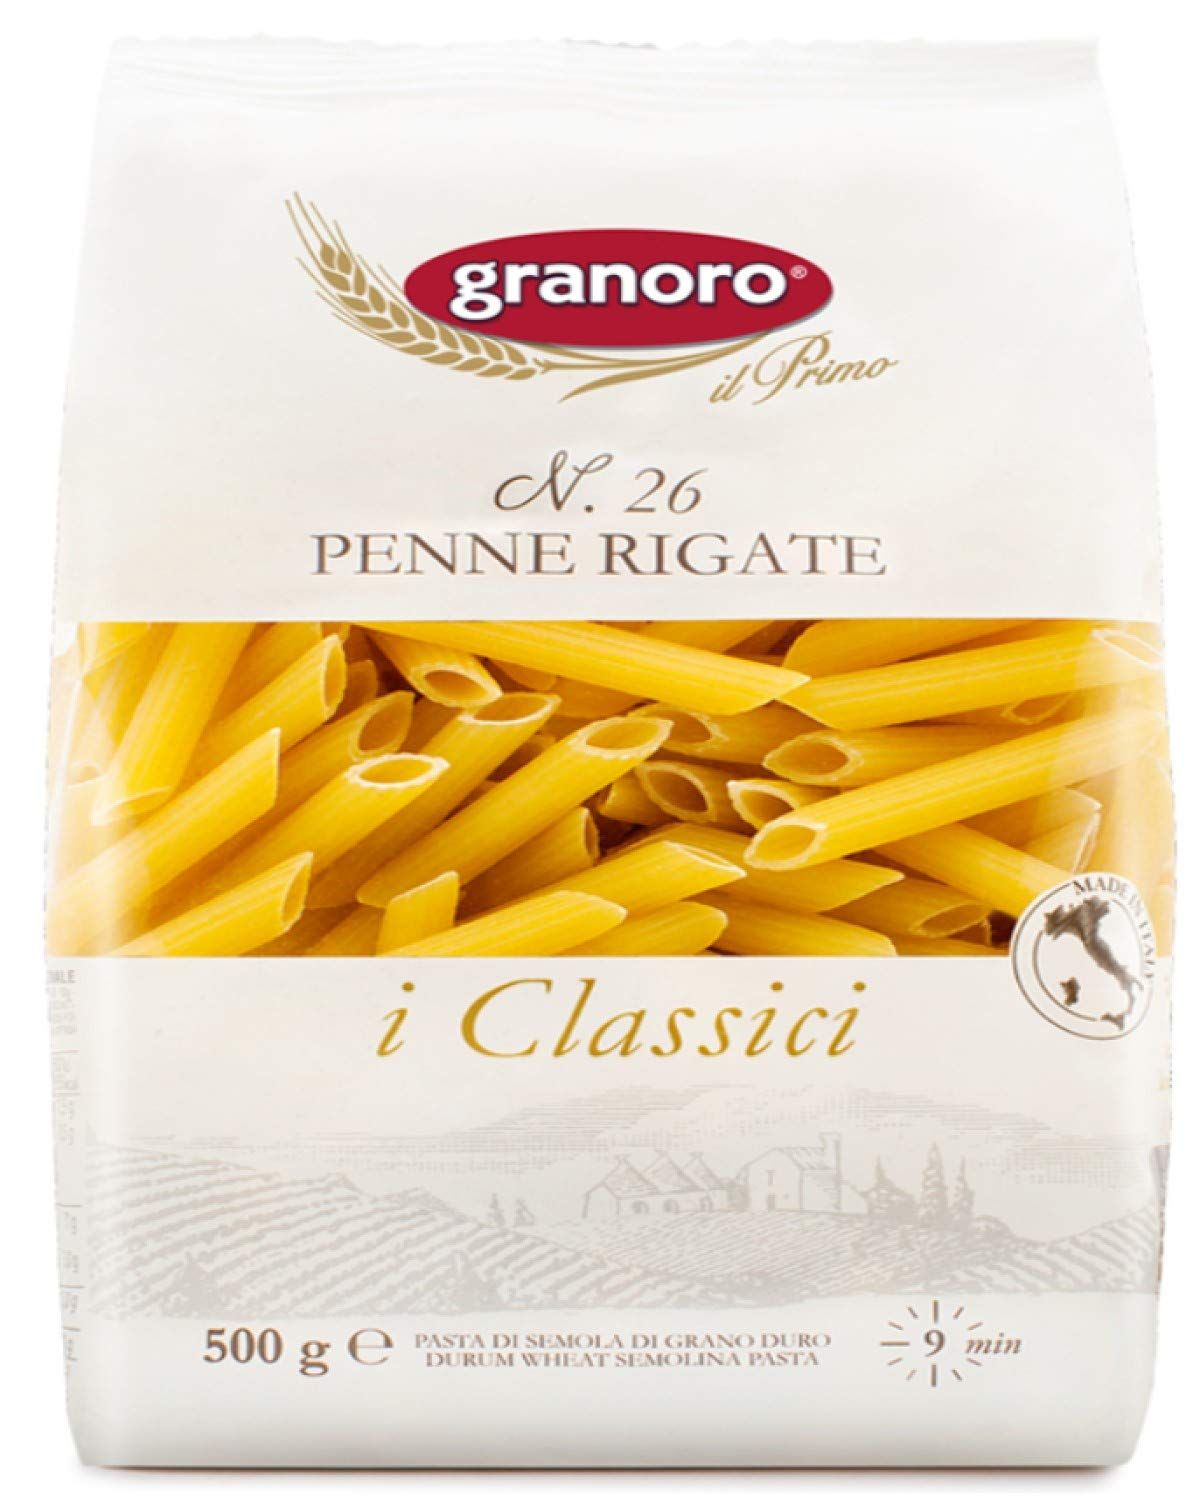 Granoro Penne Rigate Pasta Image